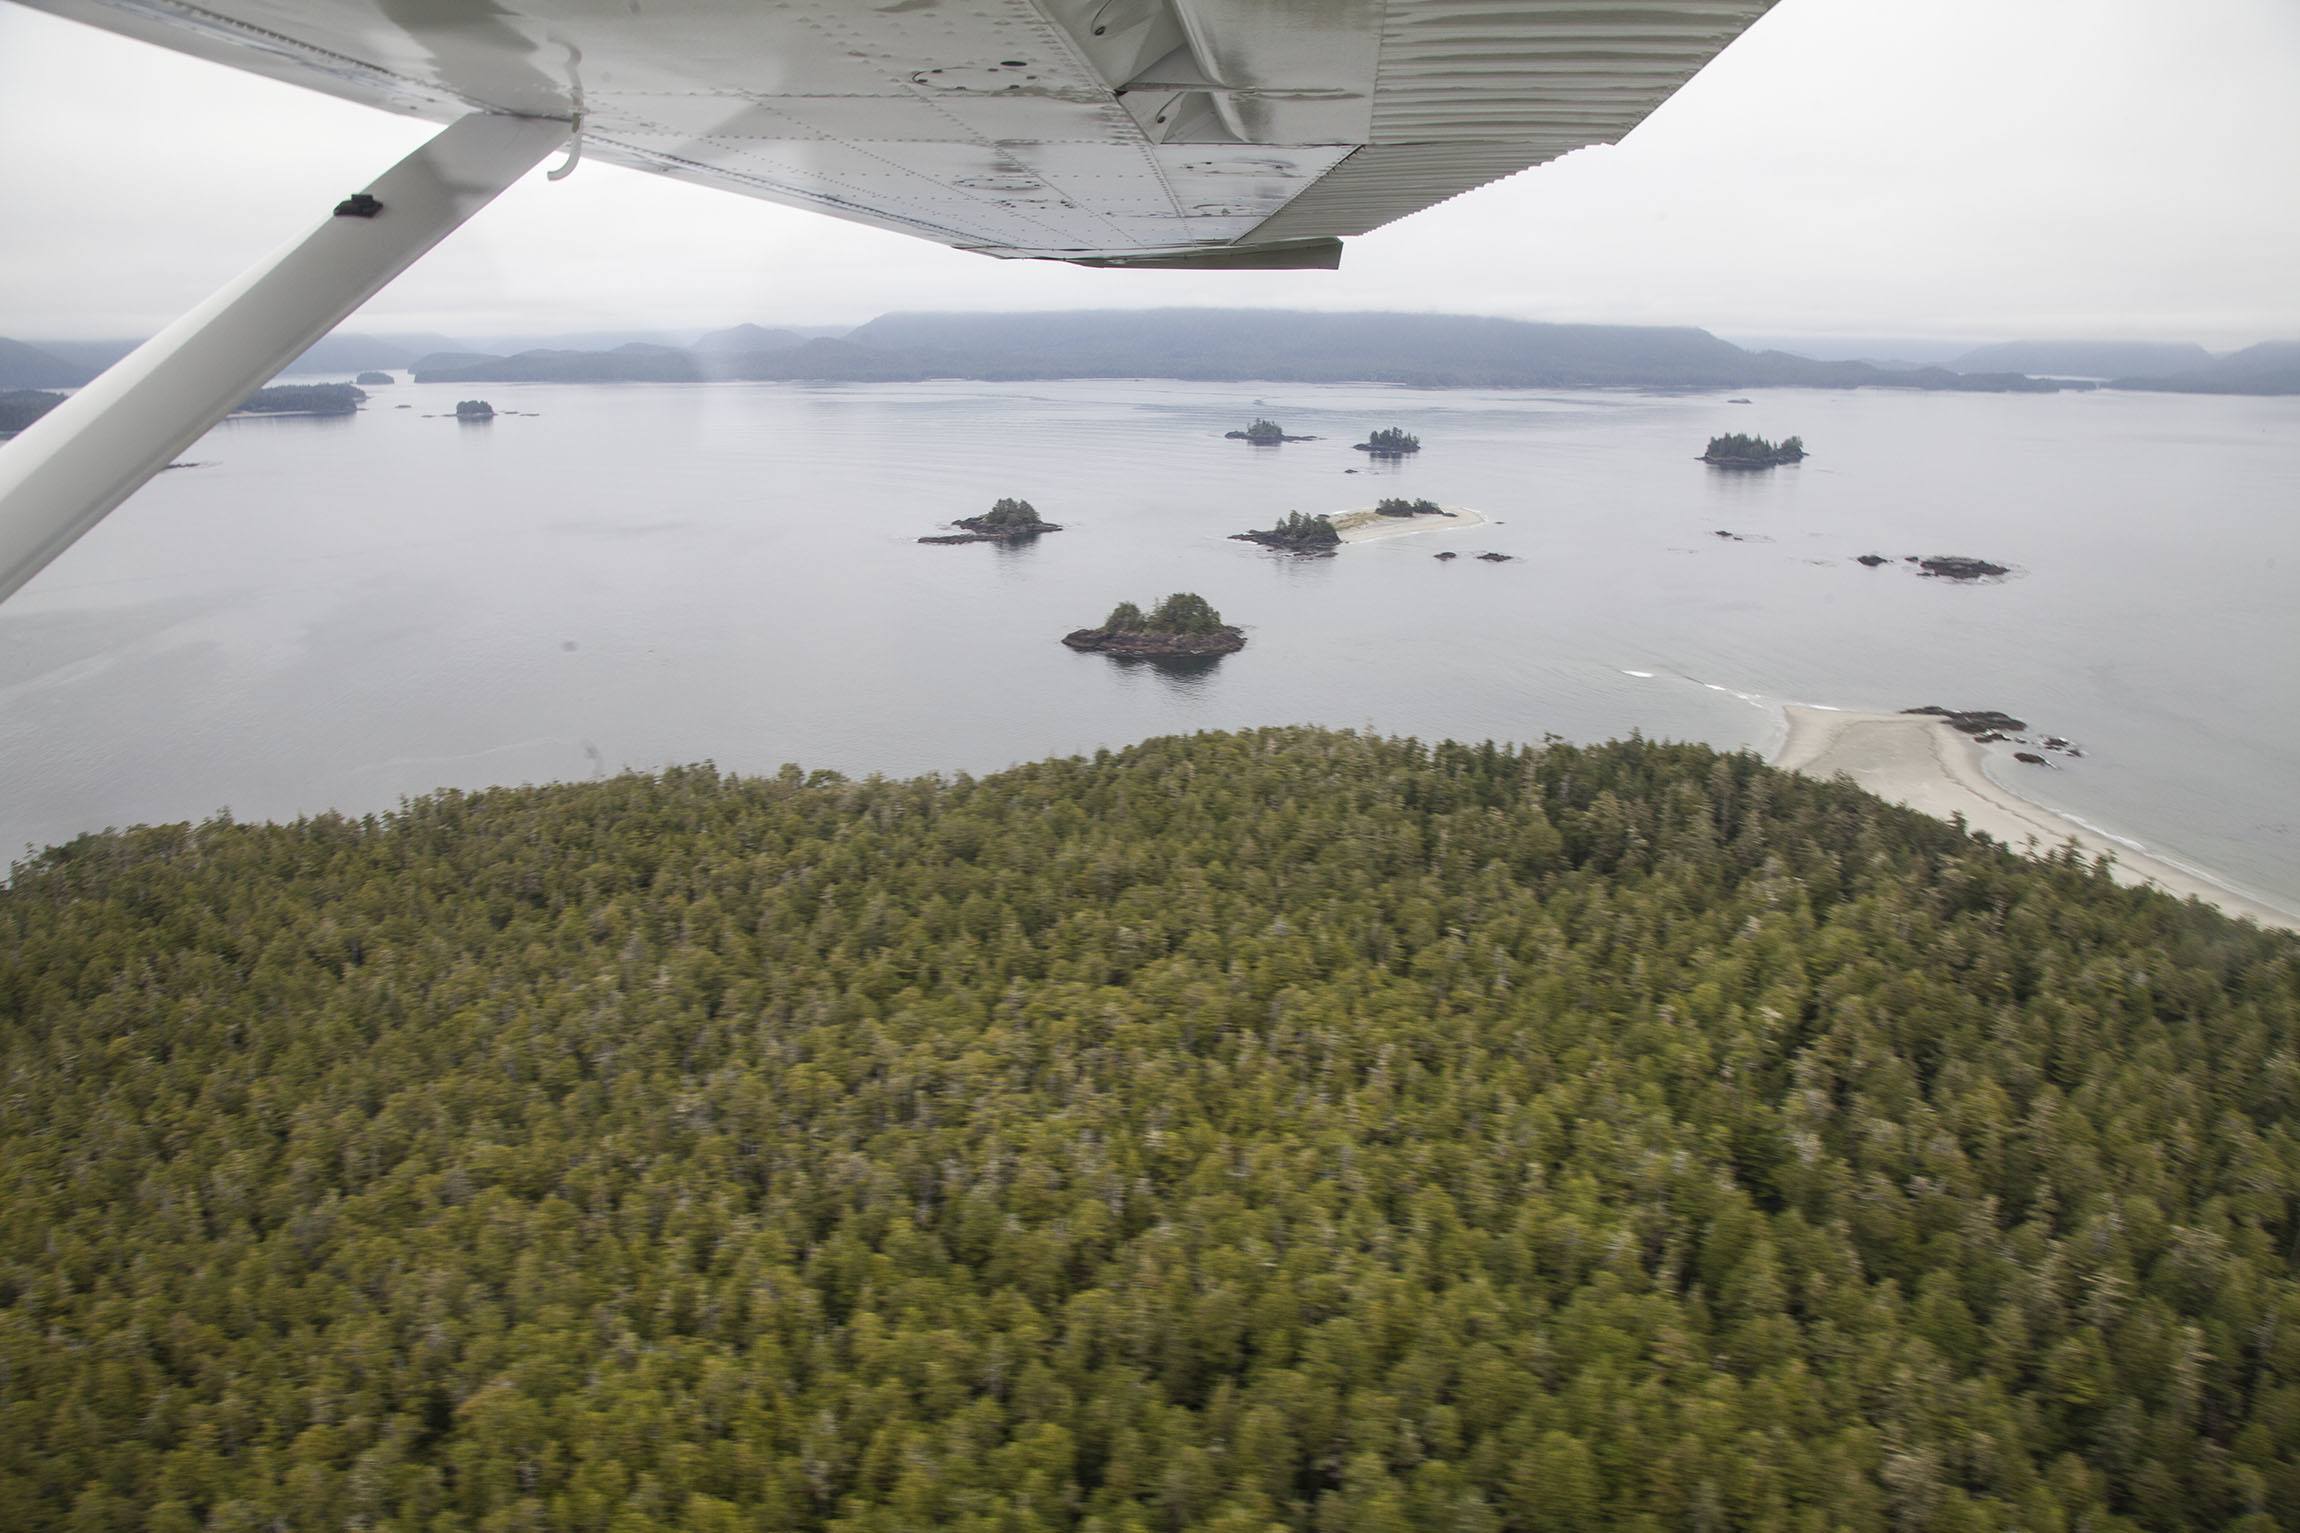 Sea plane ride above Tofino Vancouver Island Canada